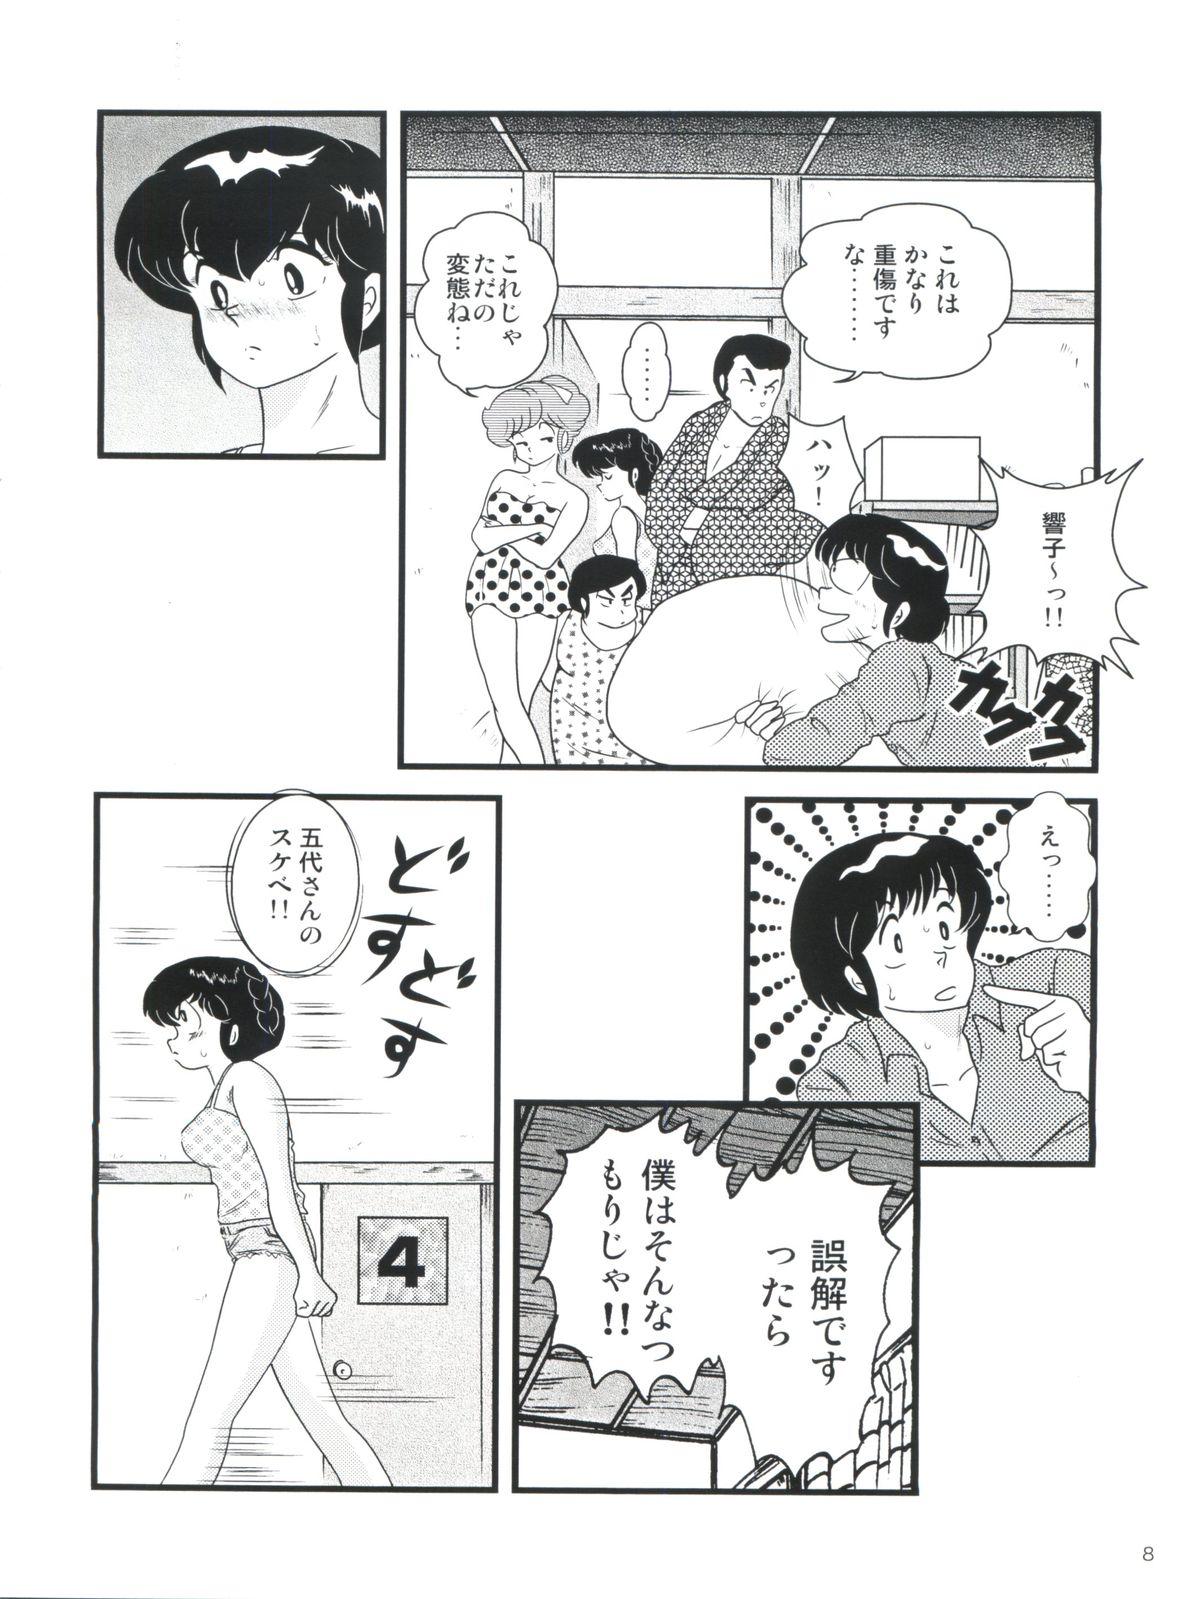 Upskirt Fairy 14 - Maison ikkoku Young Men - Page 12